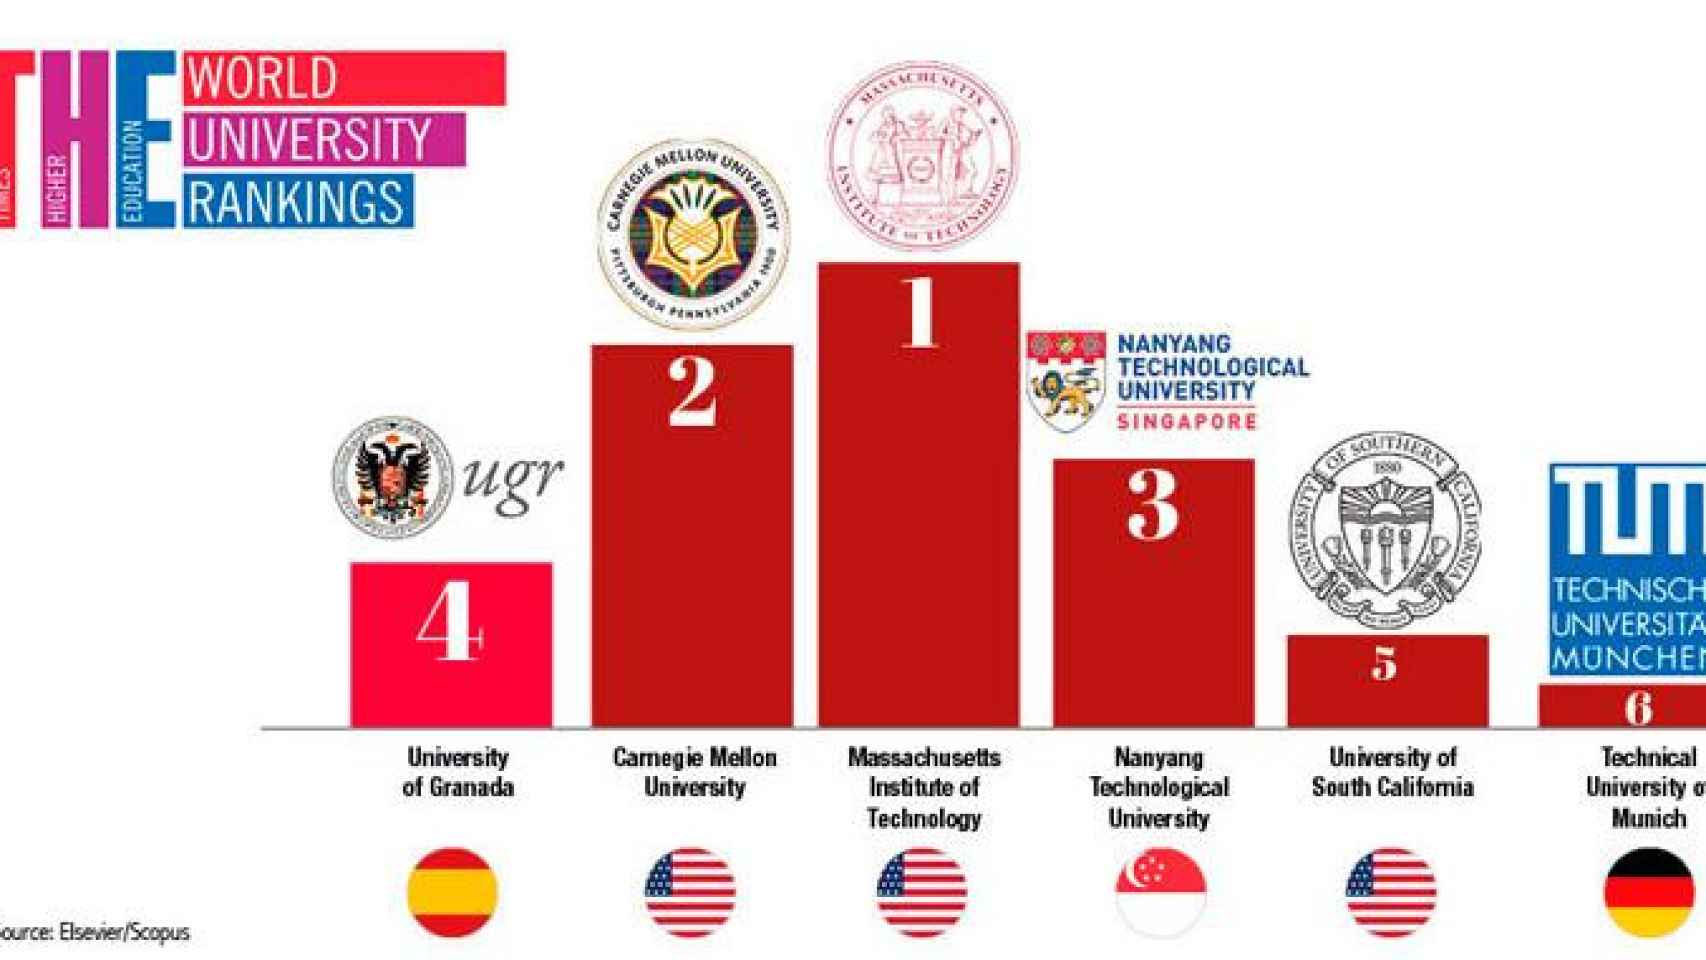 El ranking de las universidades del mundo en función de la calidad de sus artículos científicos